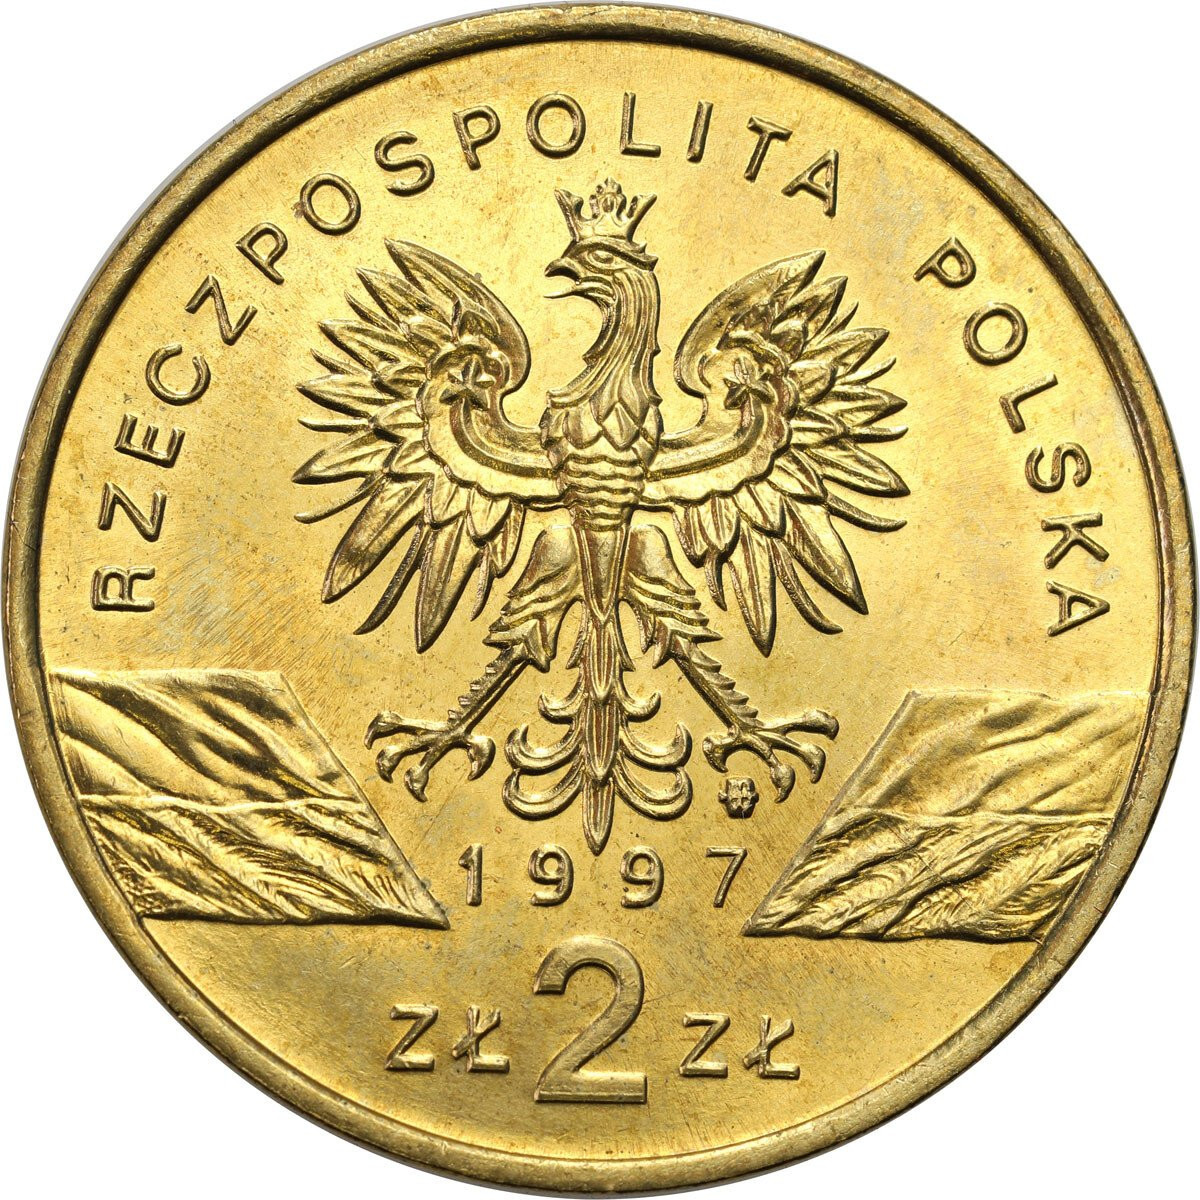 III RP. 2 złote 1997 Jelonek Rogacz – RZADSZE